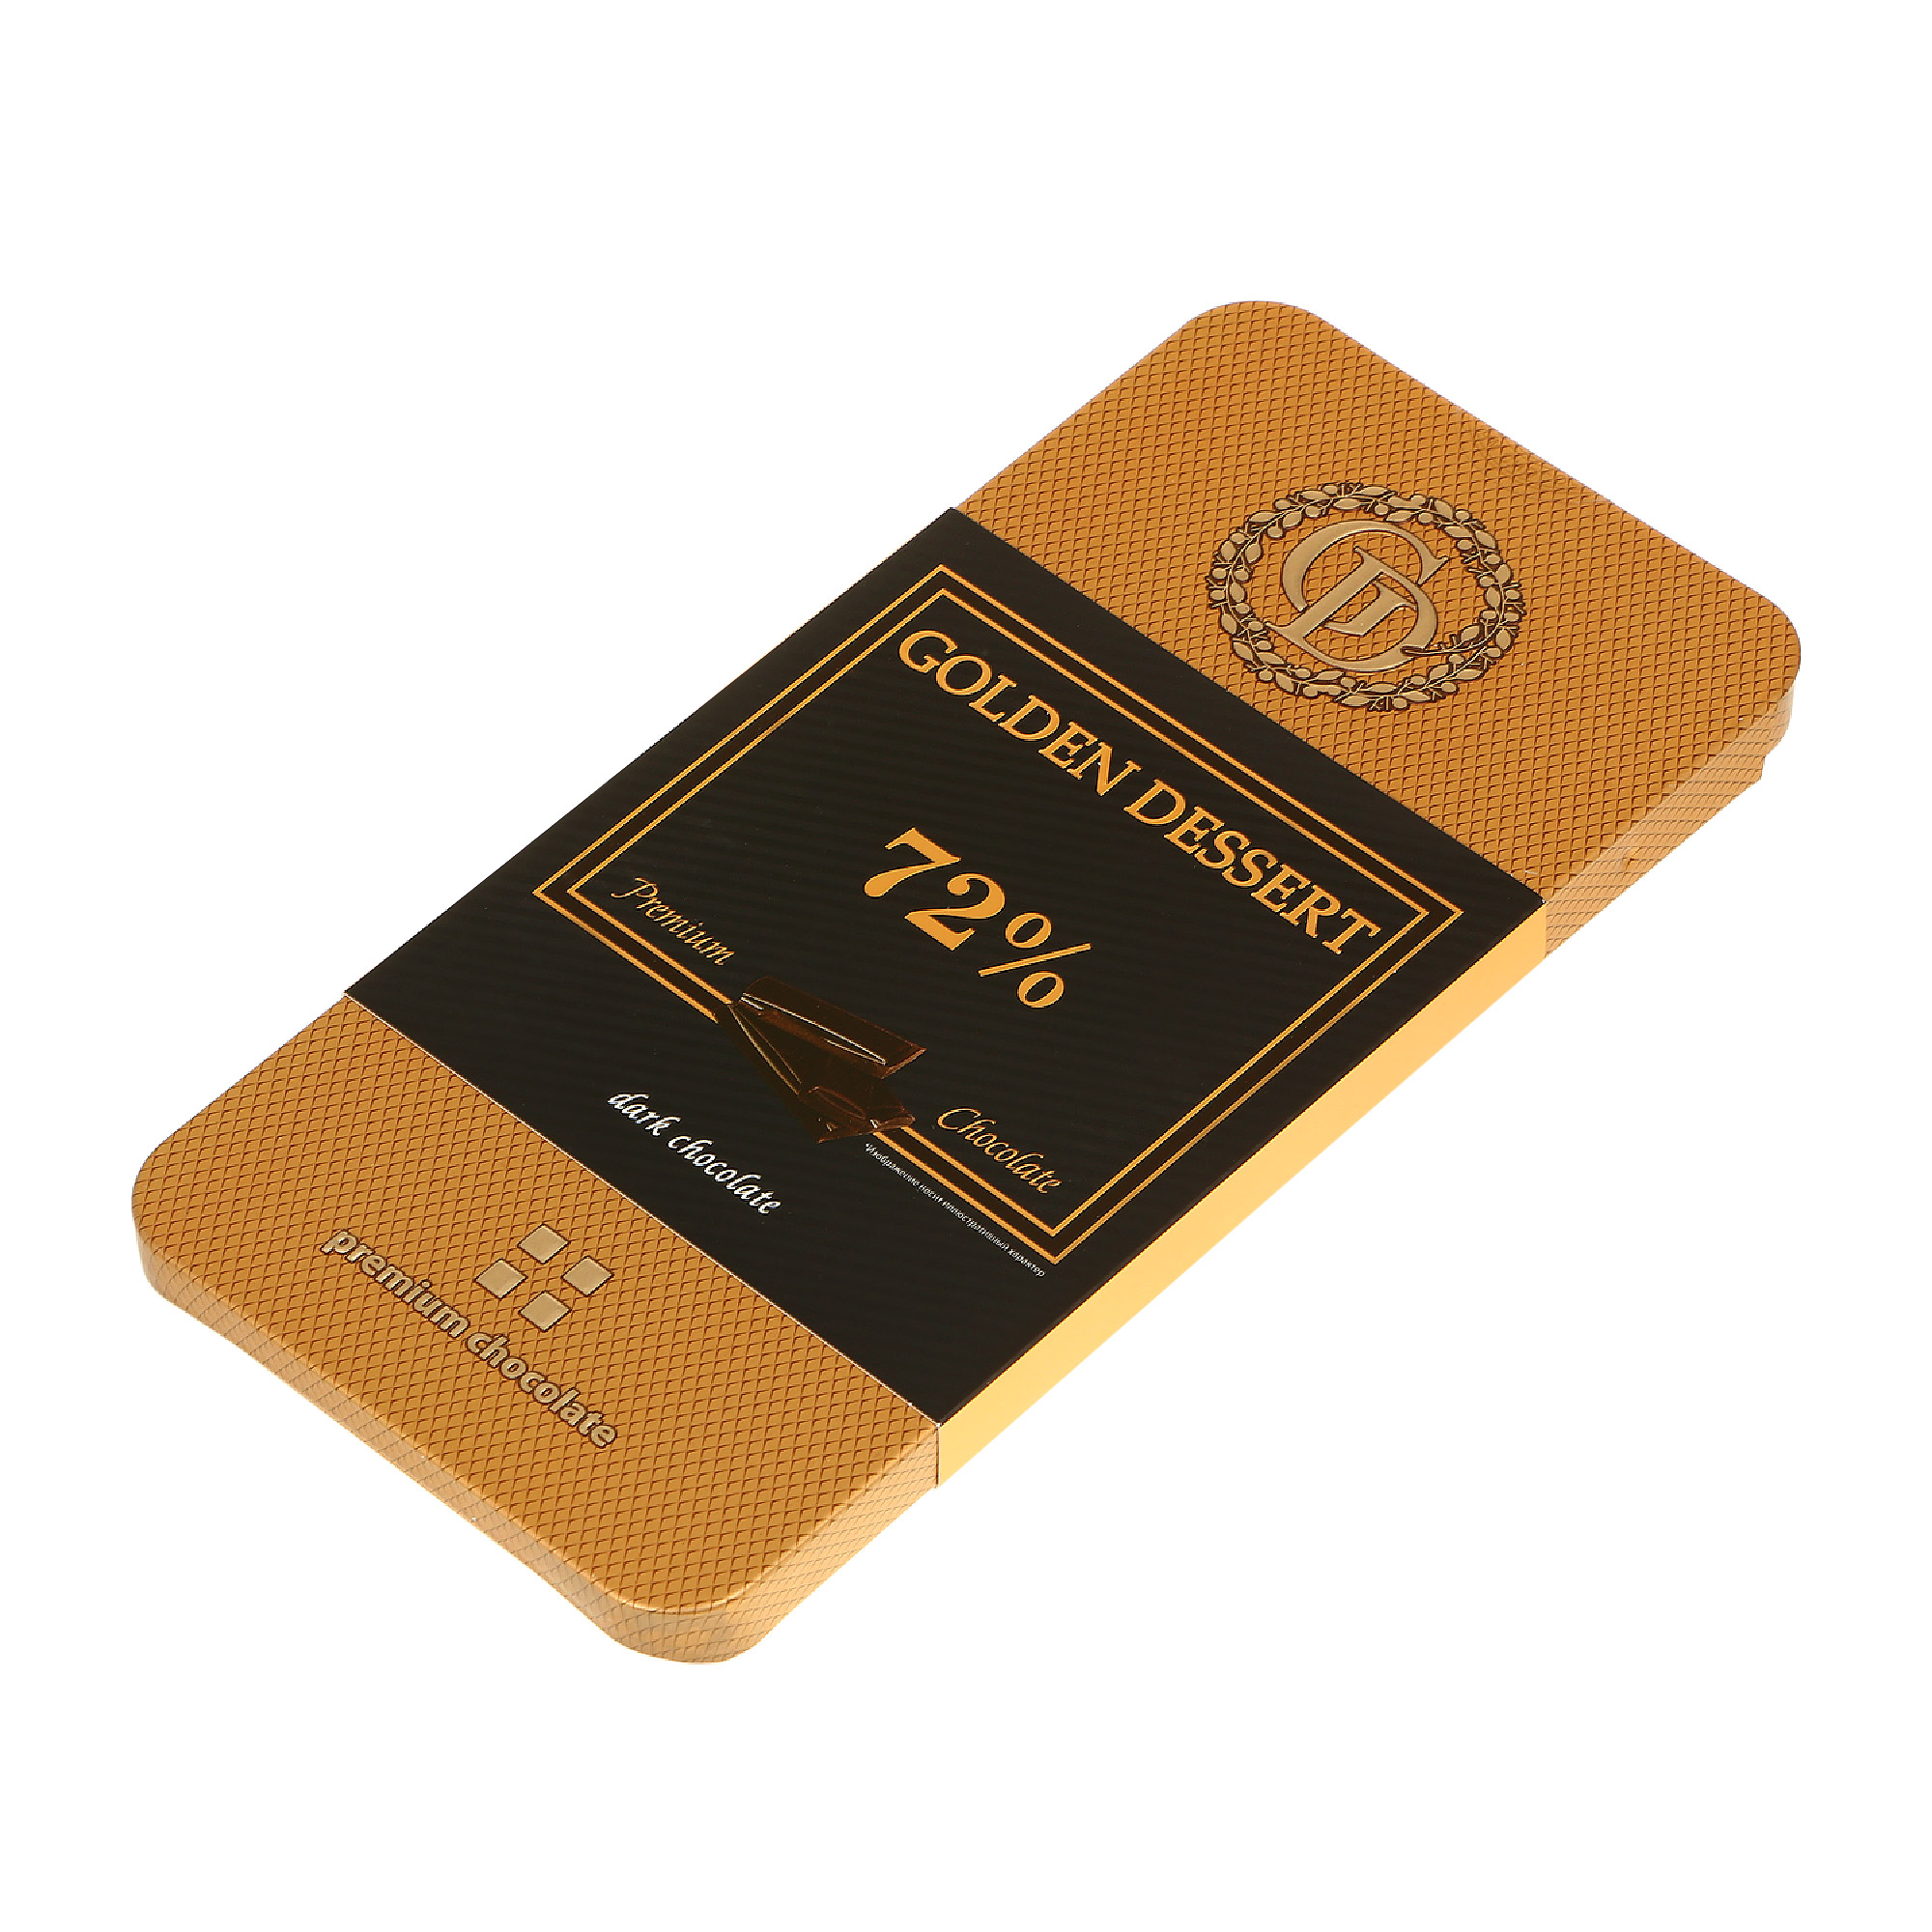 Шоколад горький GOLDEN DESSERT 72% 100 г шоколад горький golden dessert 72% 100 г